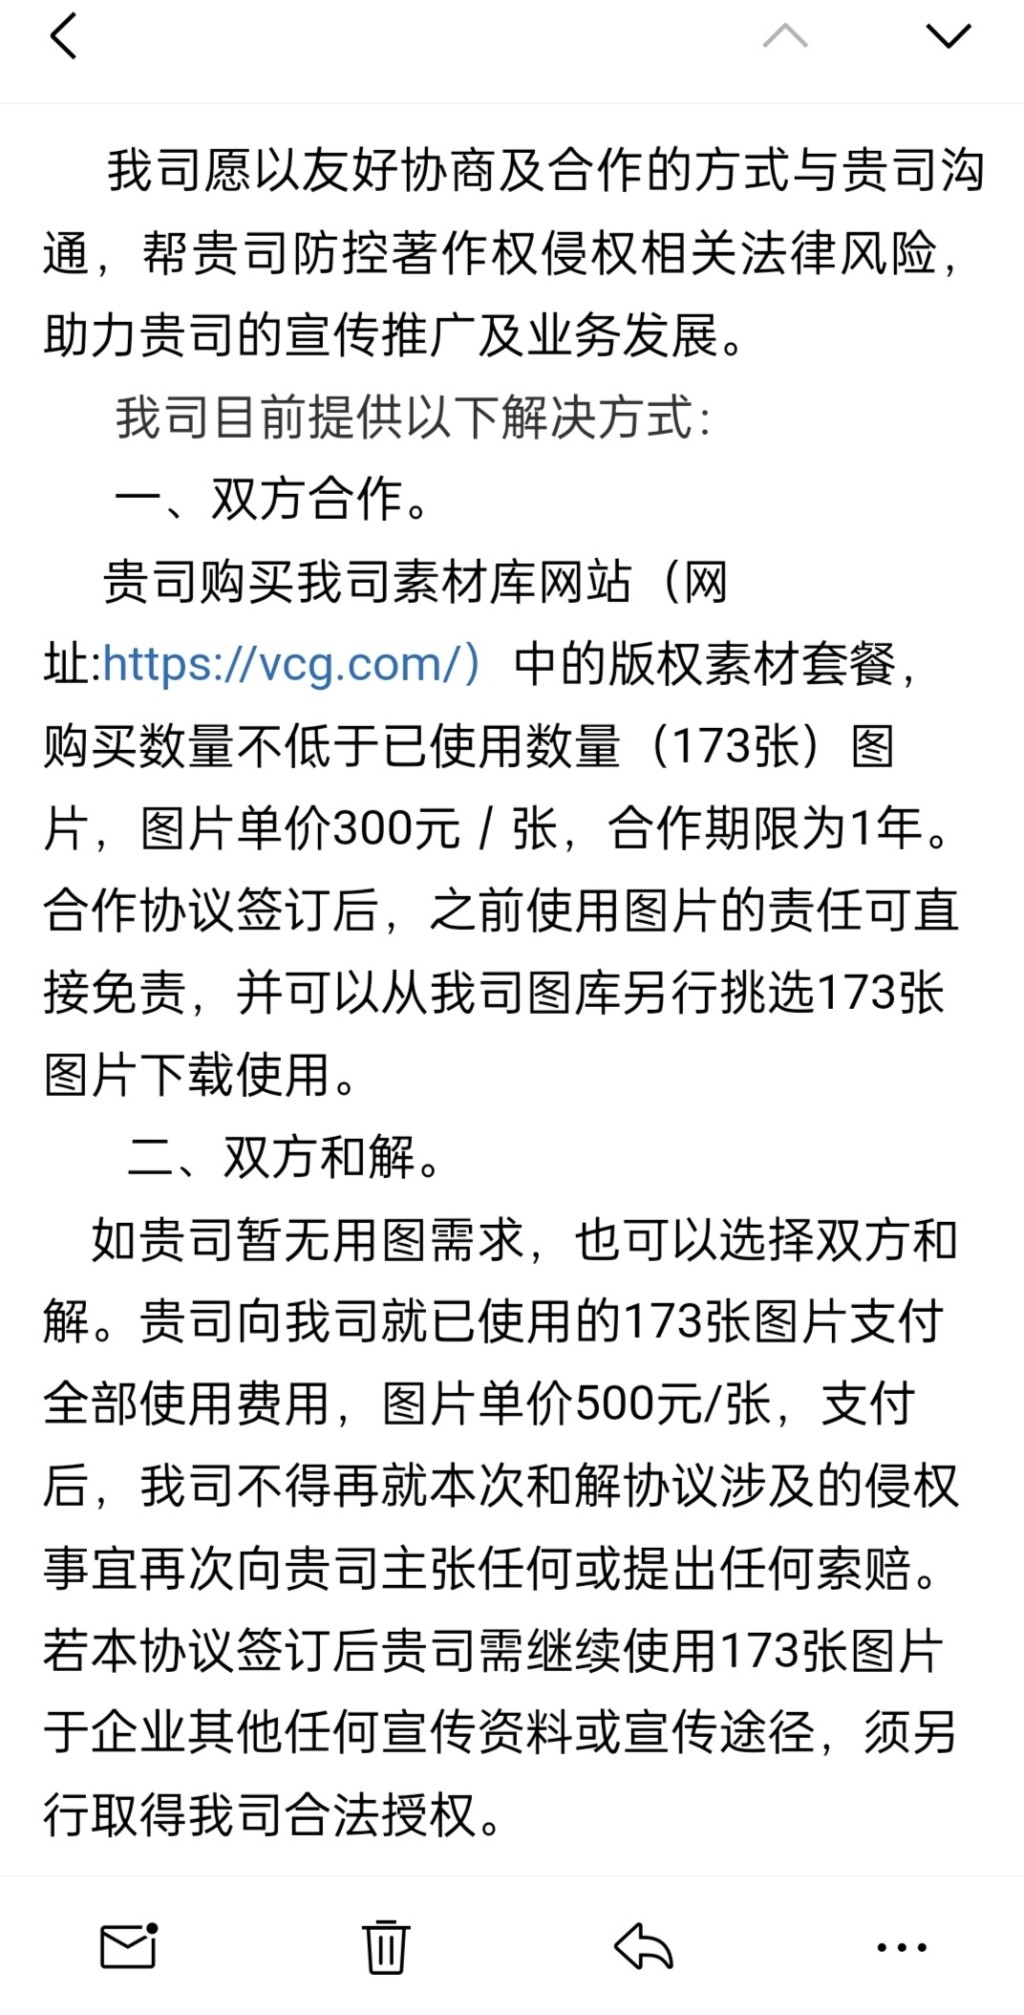 視覺中國提議戴建峰購買其套餐或賠錢和解。 微博